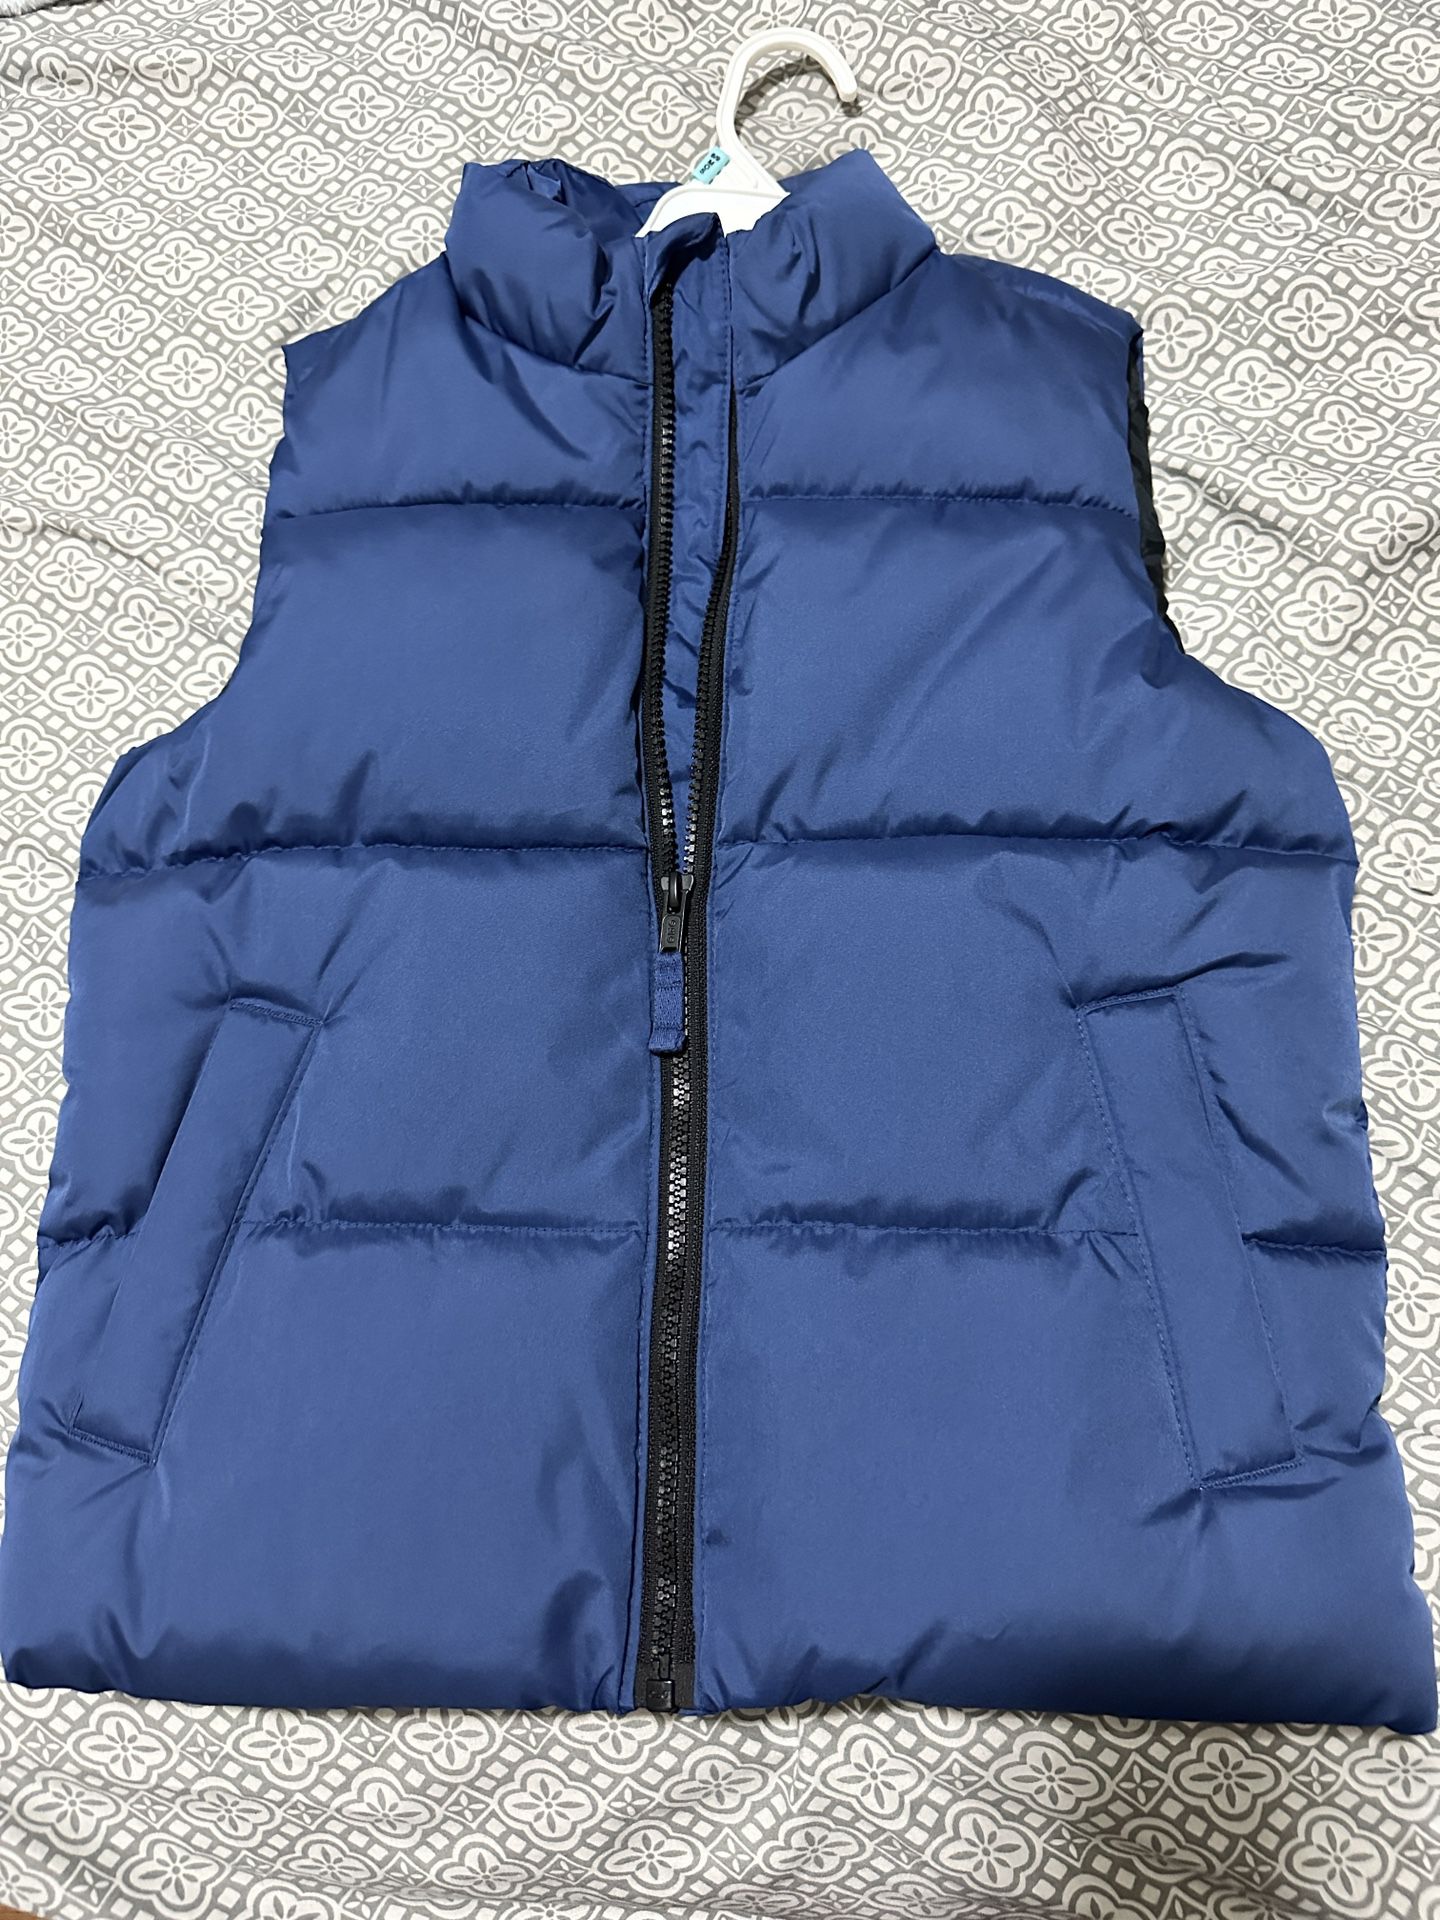 Puffer Vest, Old Navy Size 6-7 Boys